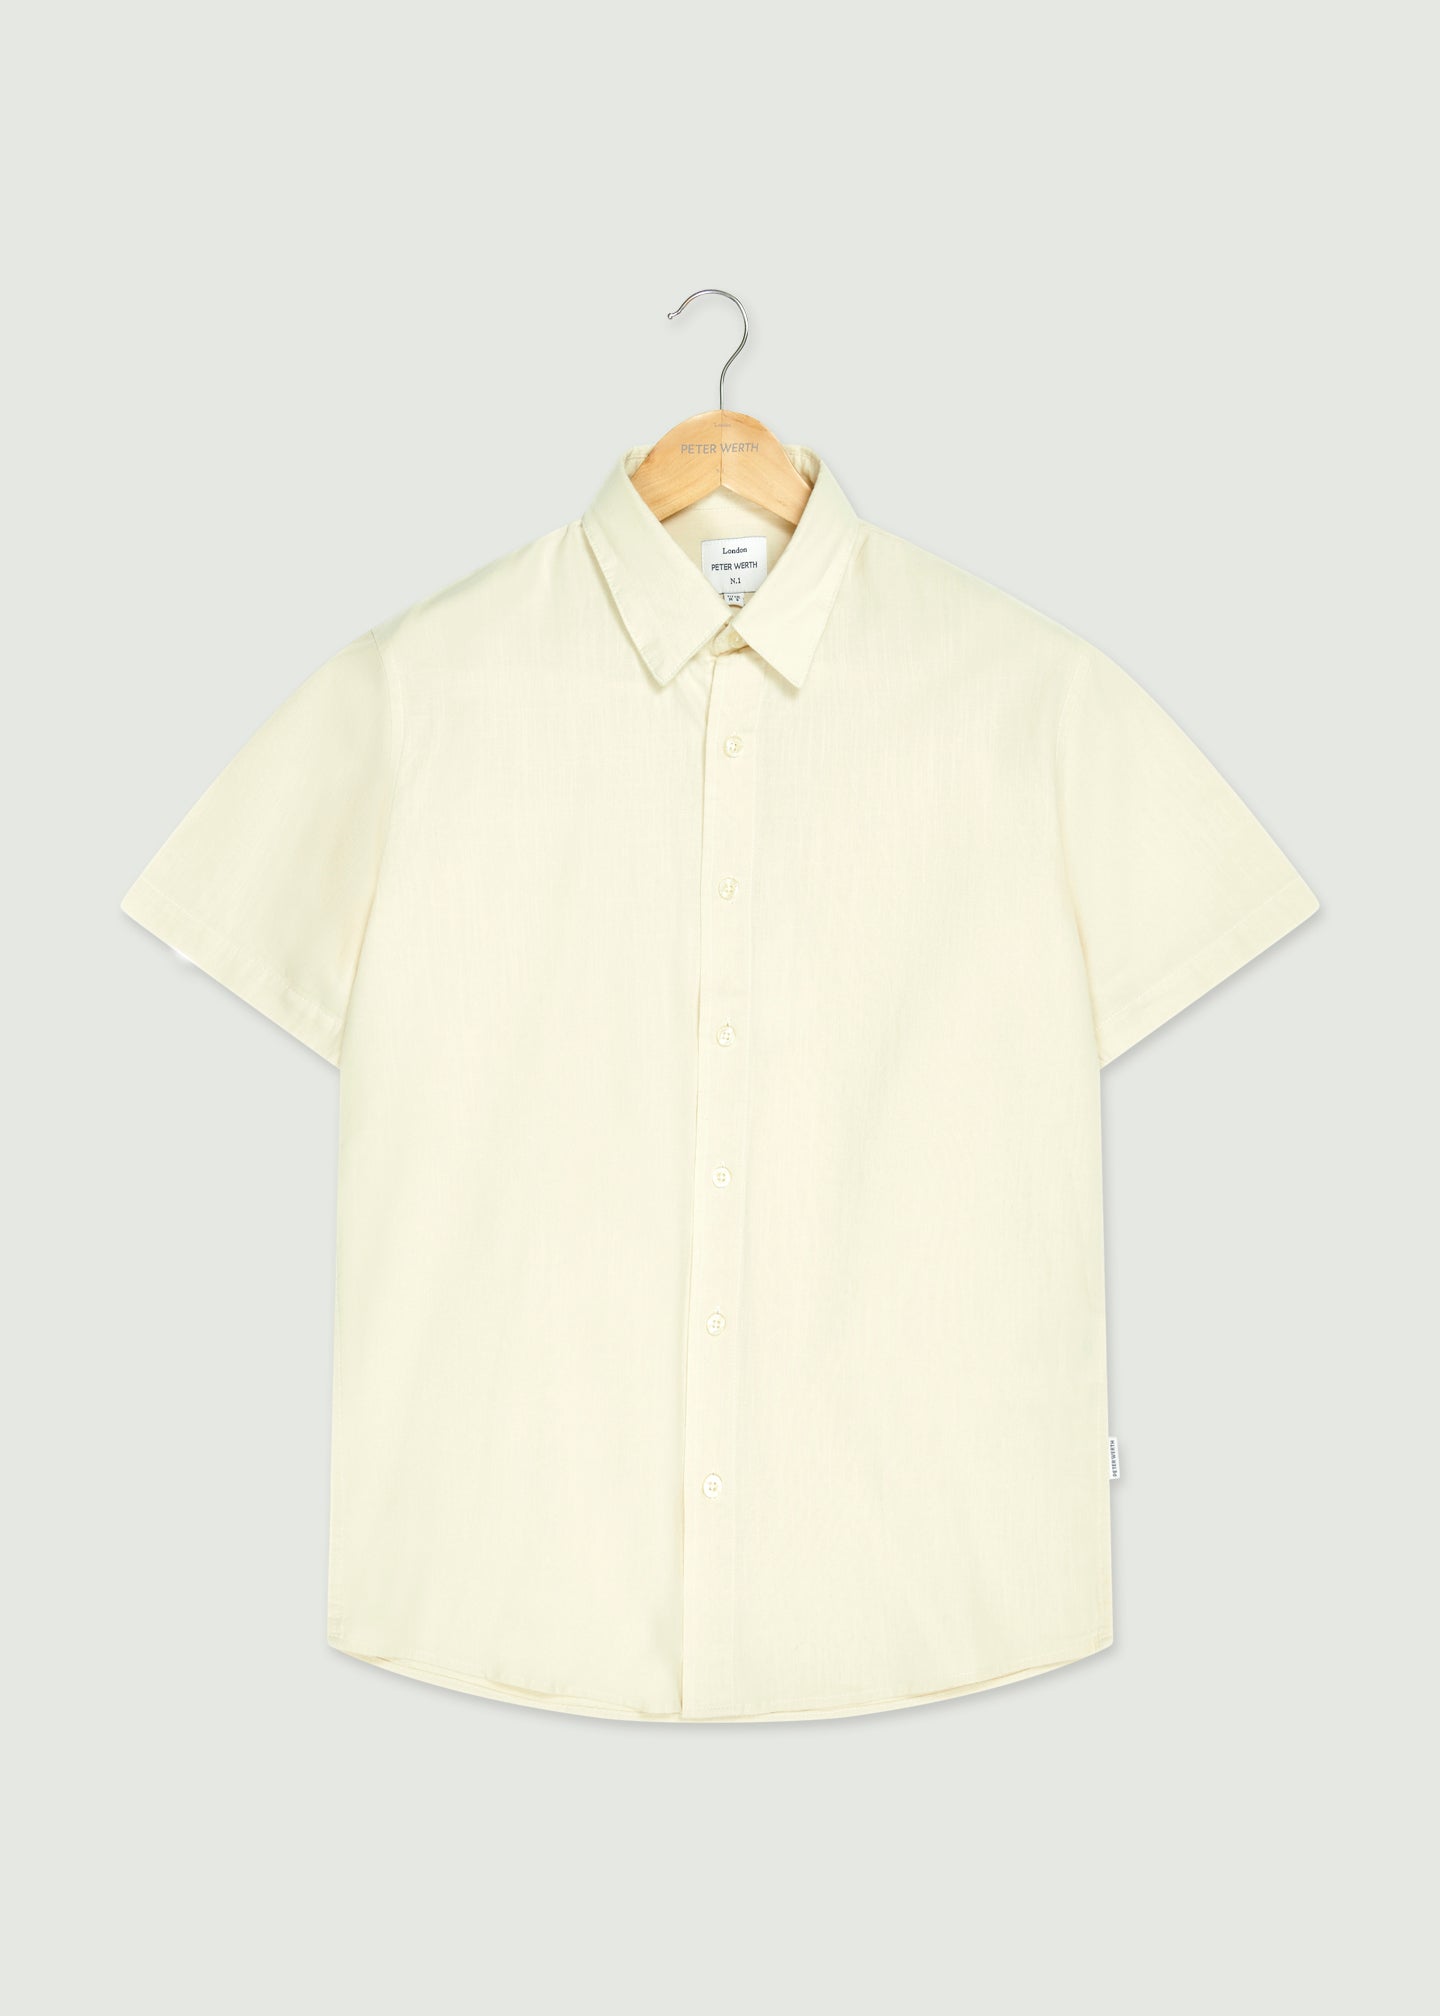 Hatchard Short Sleeve Shirt - Off White